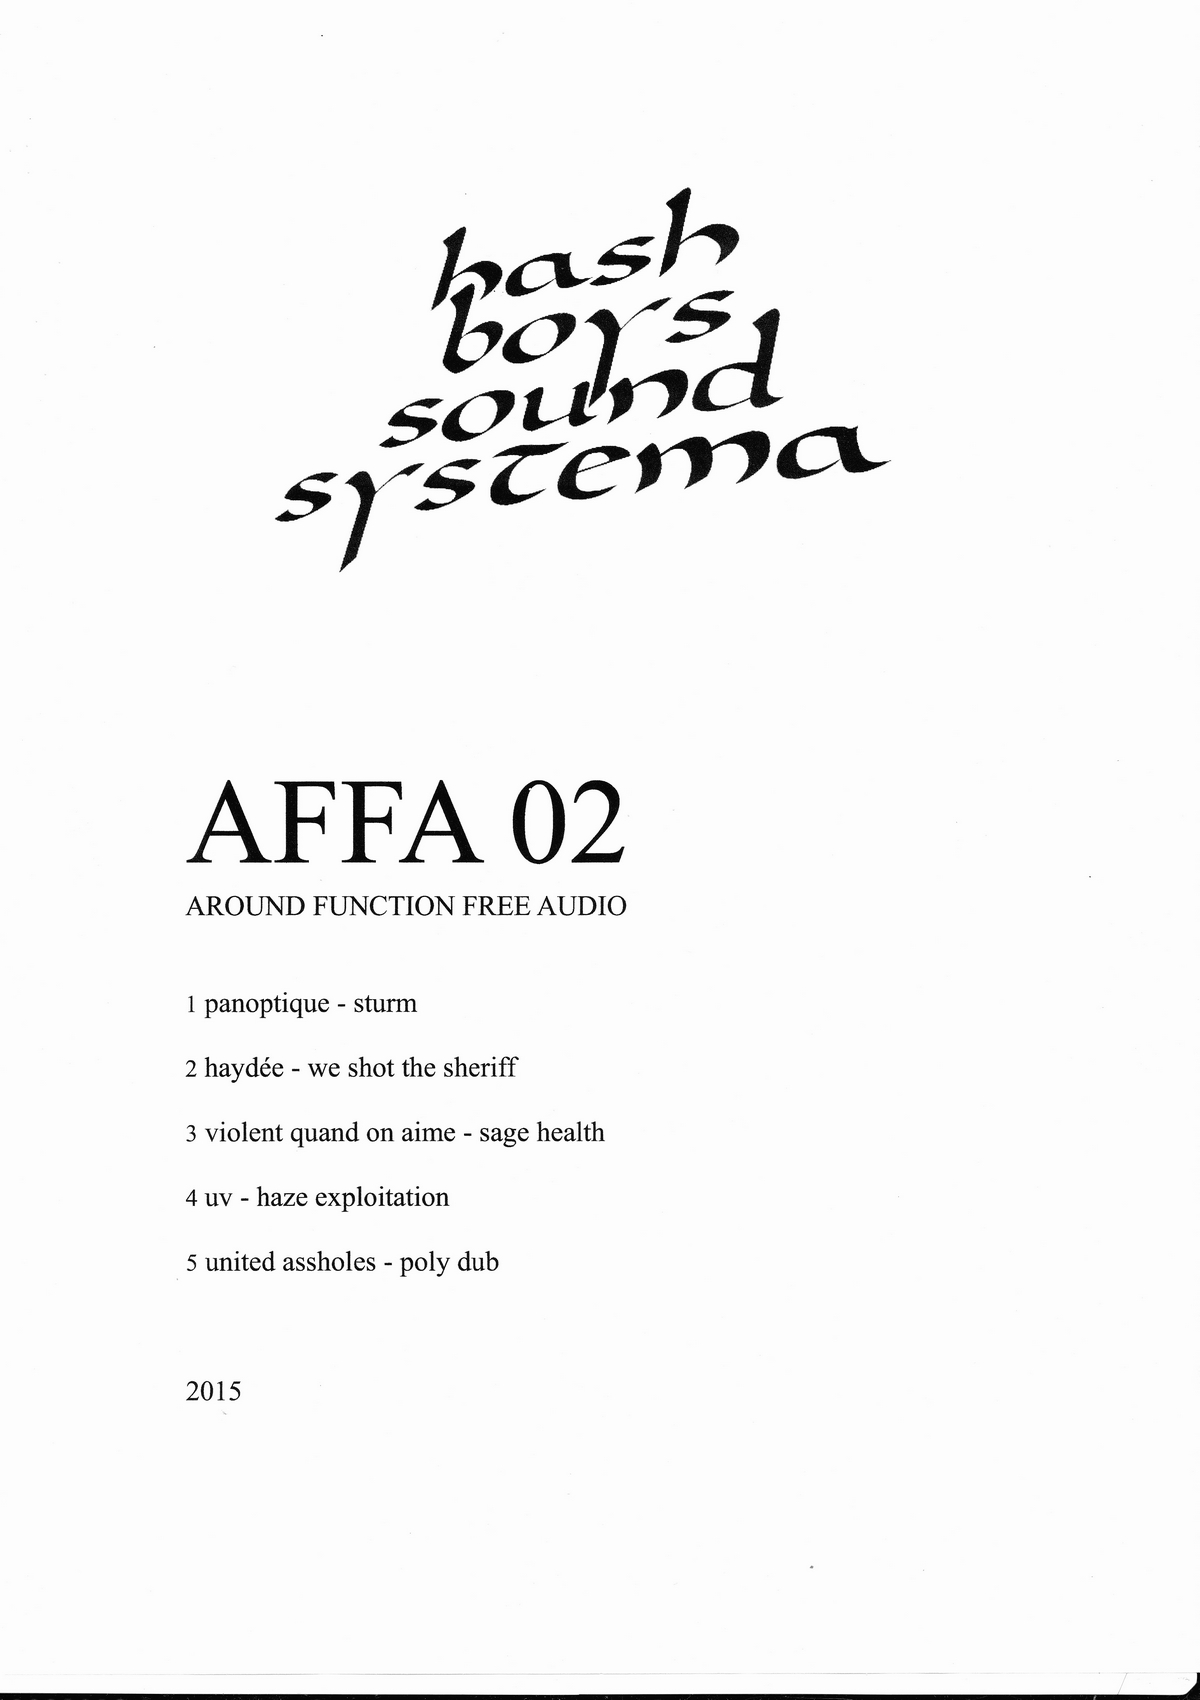 AFFA02